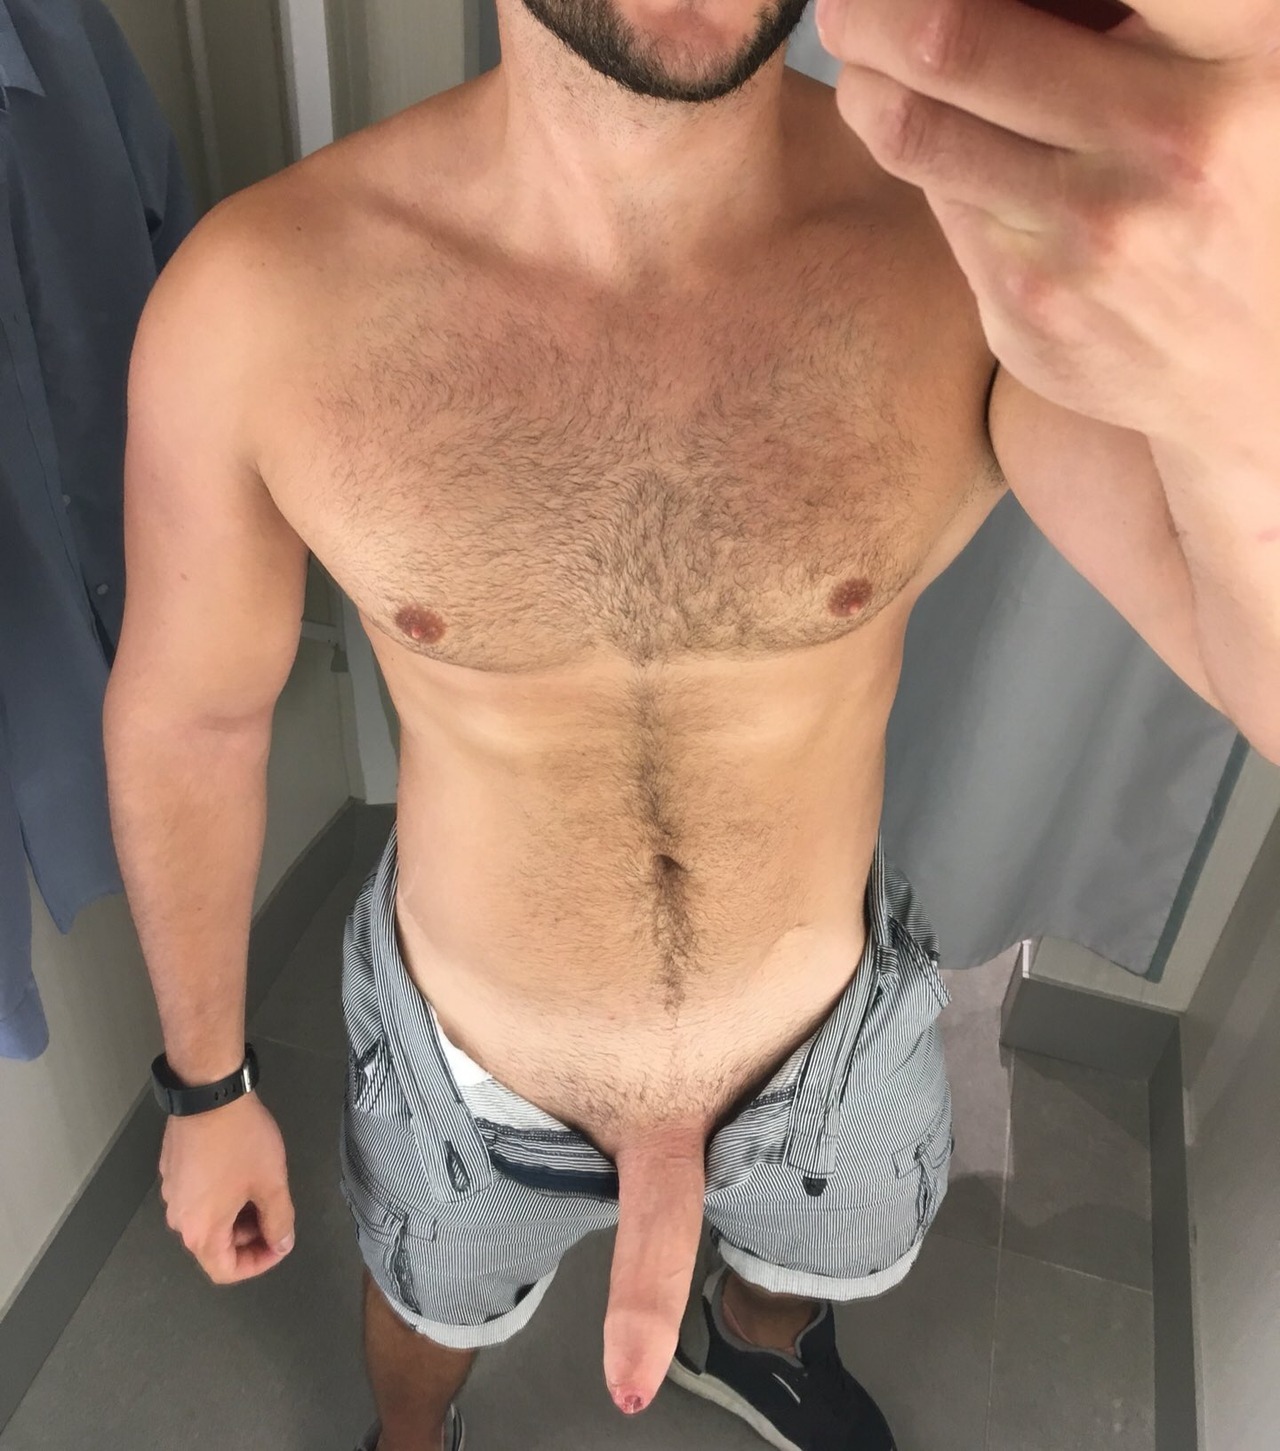 boner straight guy naked selfie